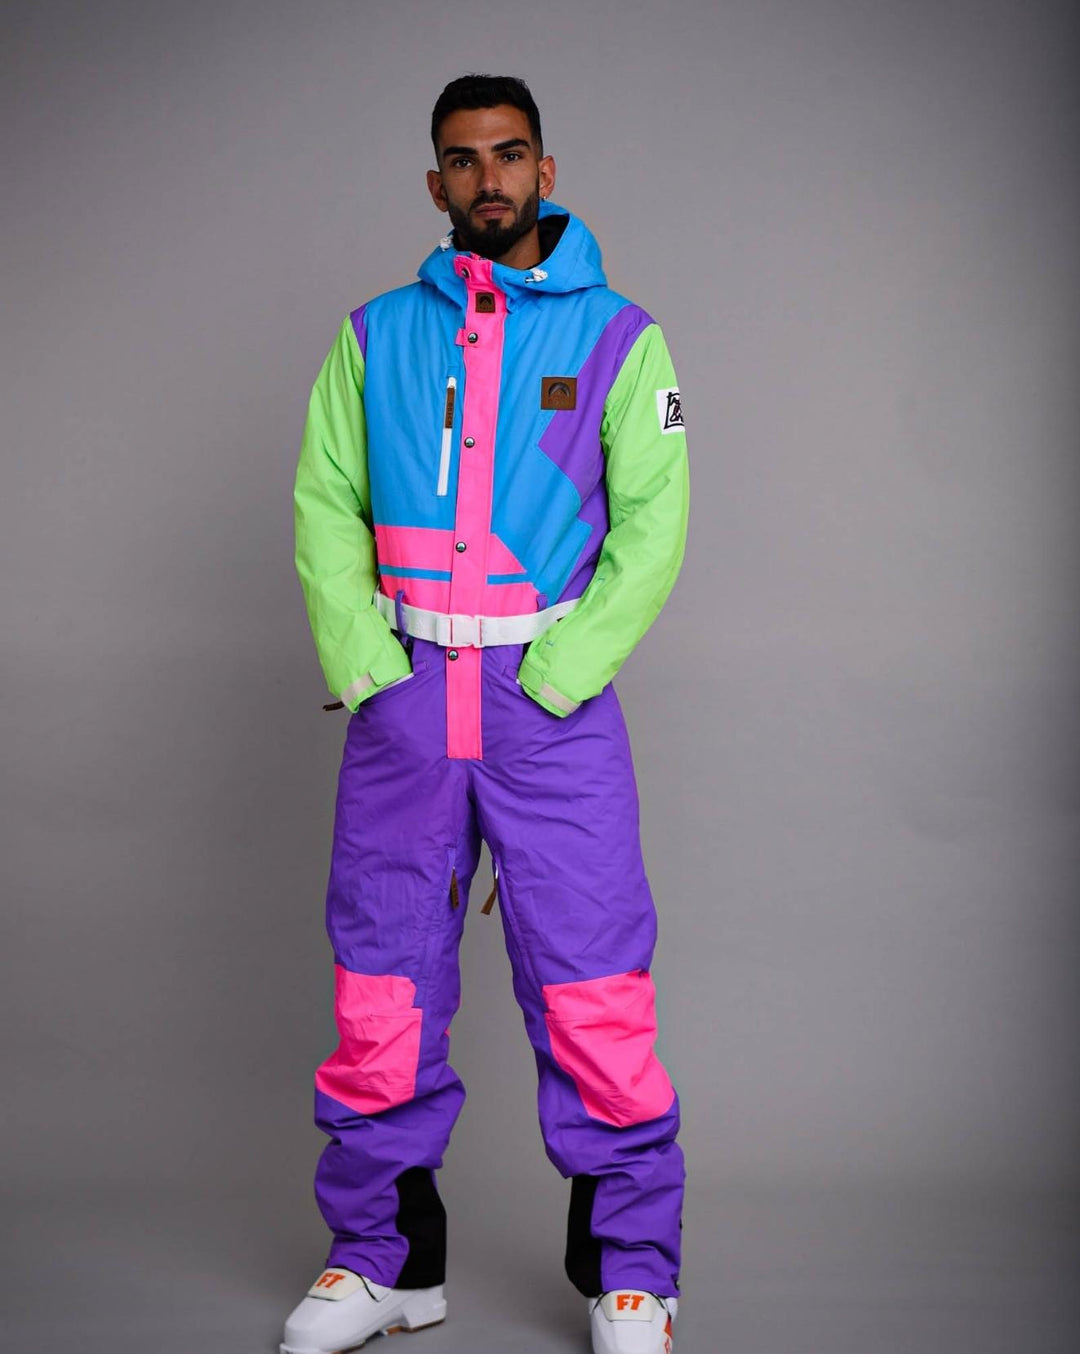 Powder Hound Ski Suit - Men's / Unisex